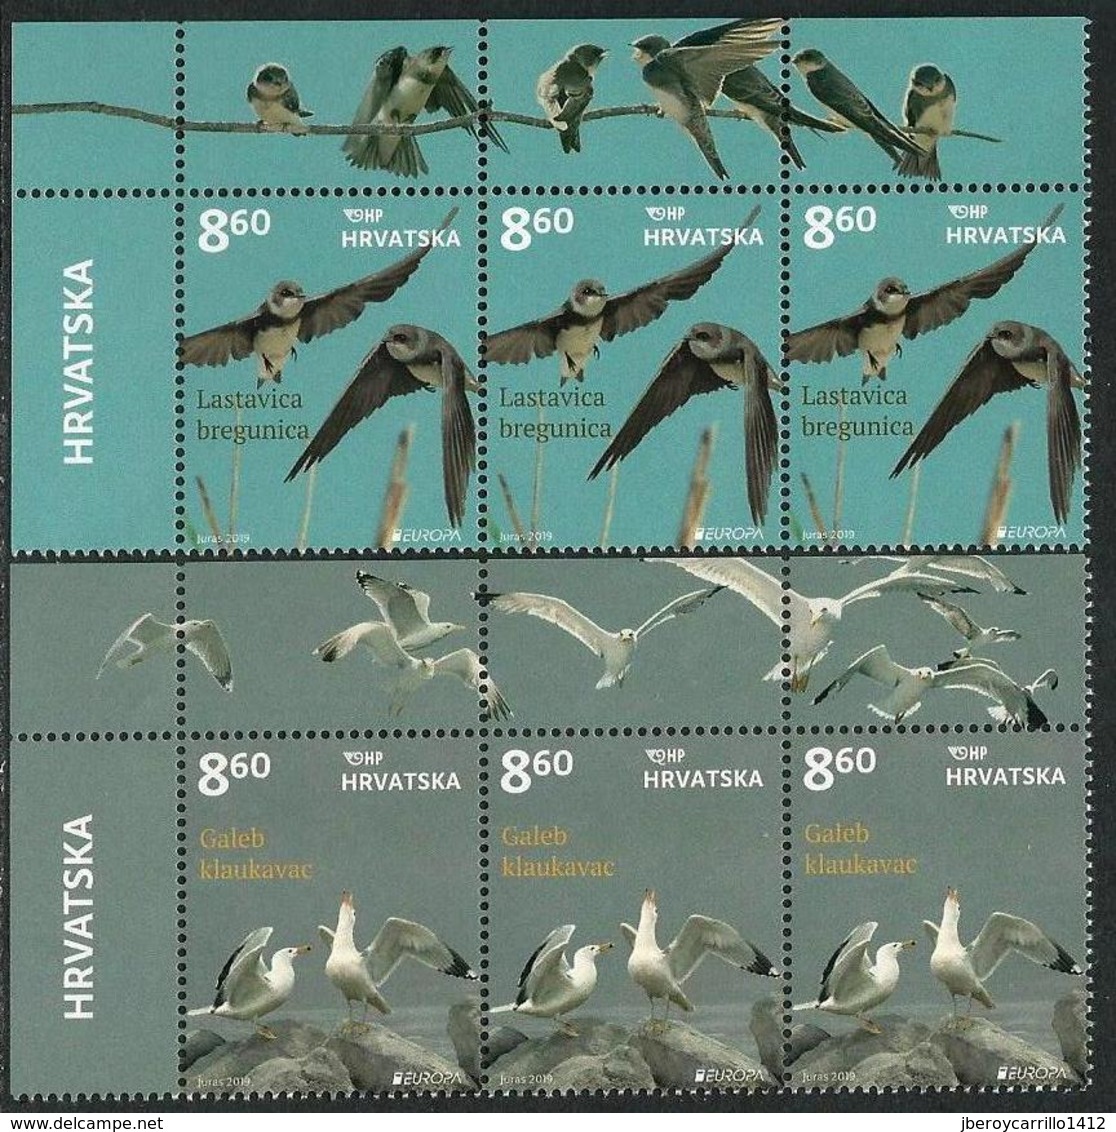 CROACIA /CROATIA /KROATIEN /HRVATSKA  -EUROPA 2019 -NATIONAL BIRDS.-"AVES -BIRDS -VÖGEL-OISEAUX"- STRIP Of 3 SERIES - 2019